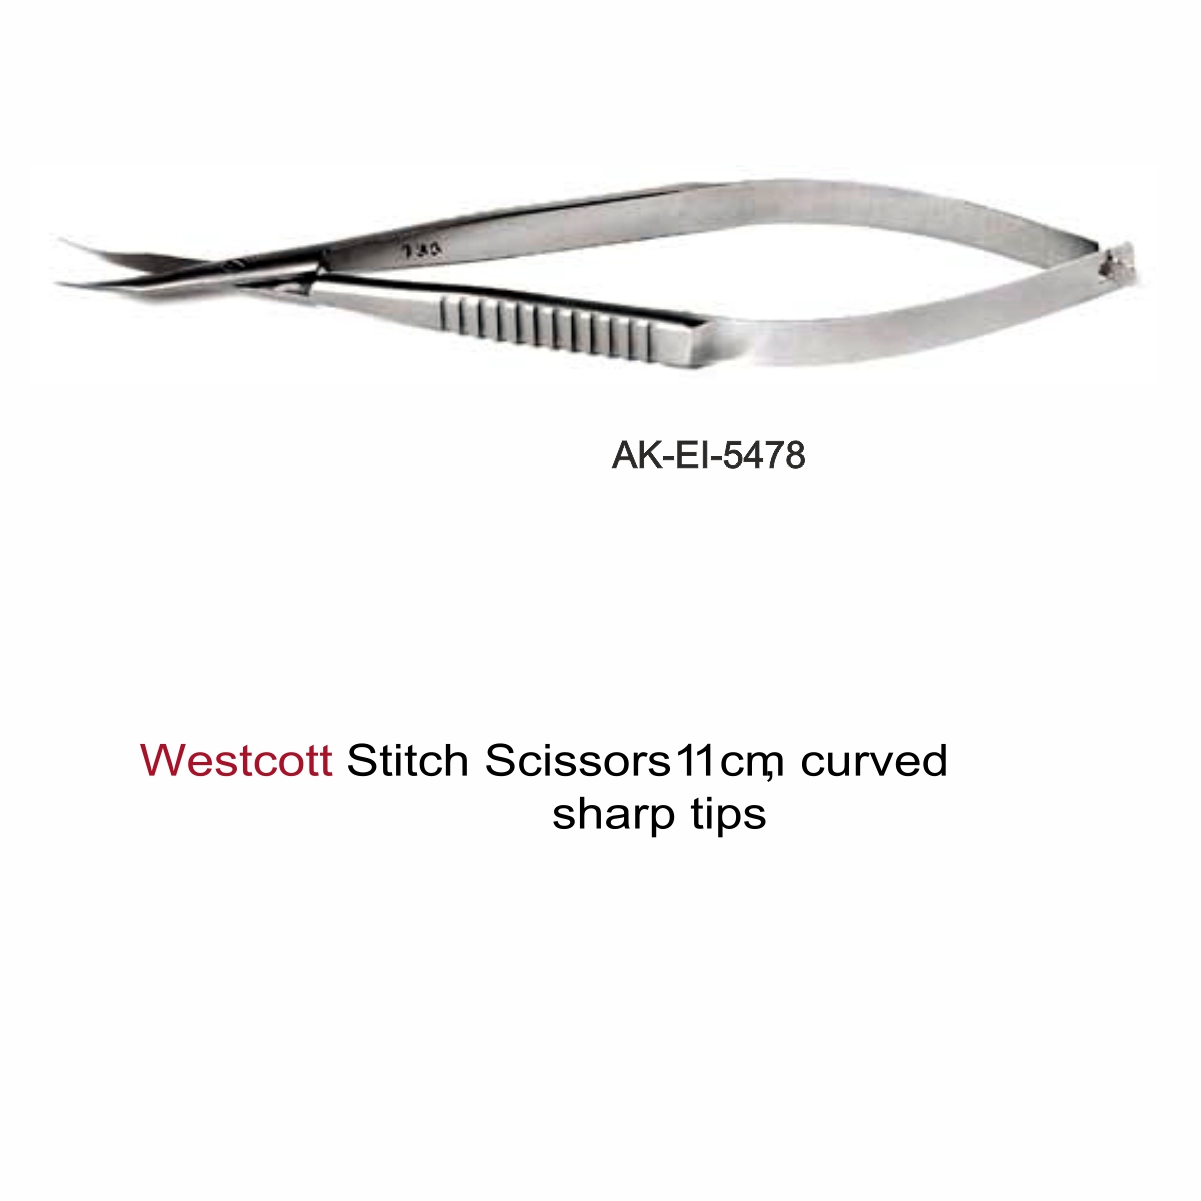 Westcott Stitch Scissors